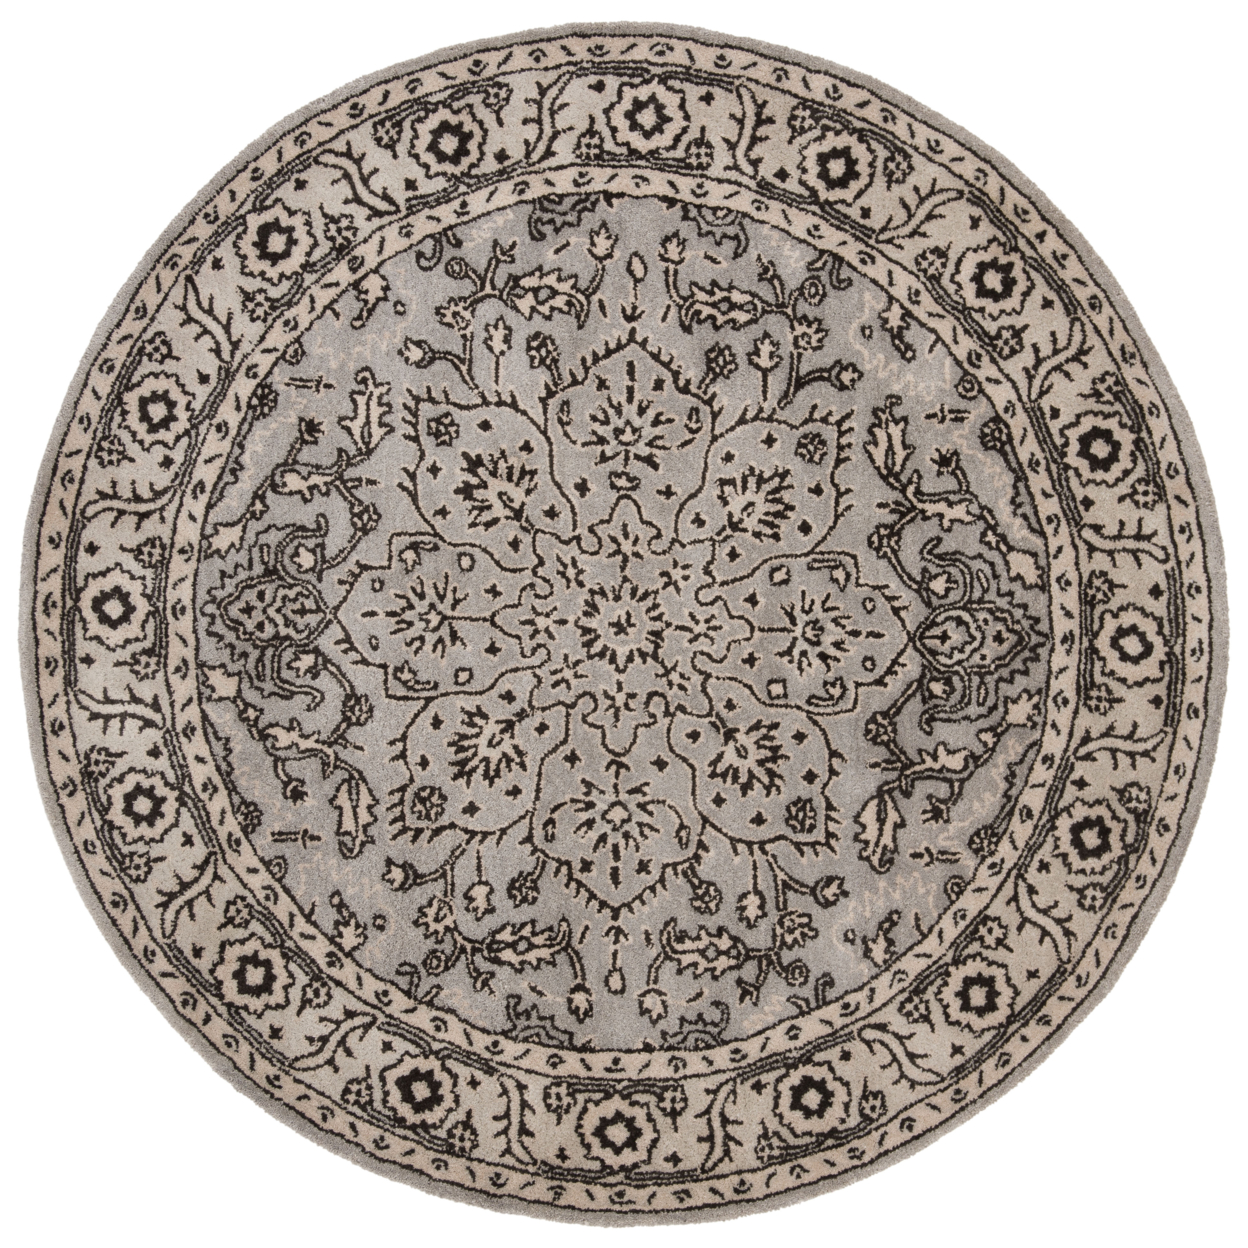 SAFAVIEH Antiquity AT58A Handmade Grey / Beige Rug - 6' Round